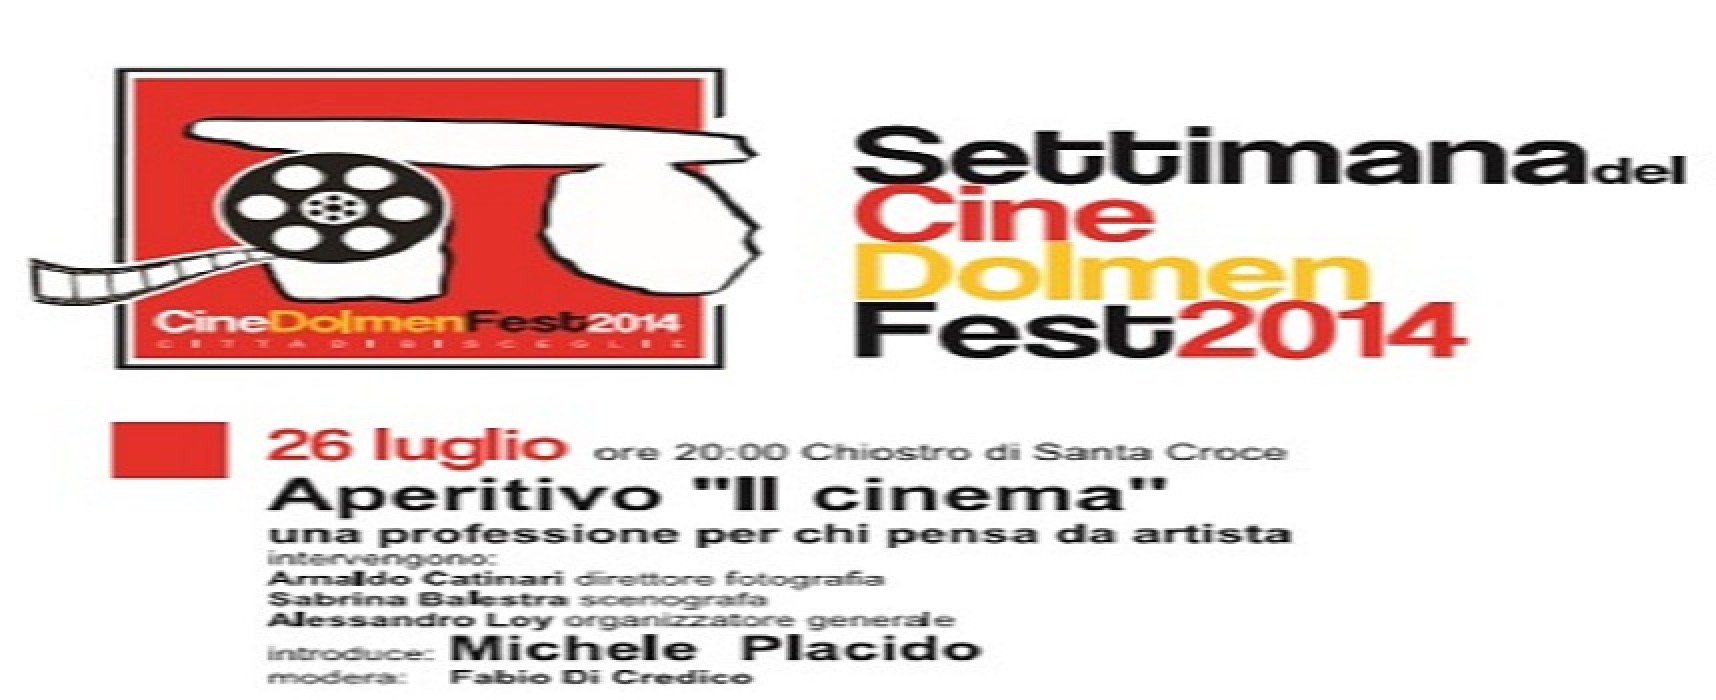 Annullato l’aperitivo “Il Cinema” in programma questa sera alle 20.00 presso il chiostro di Santa Croce